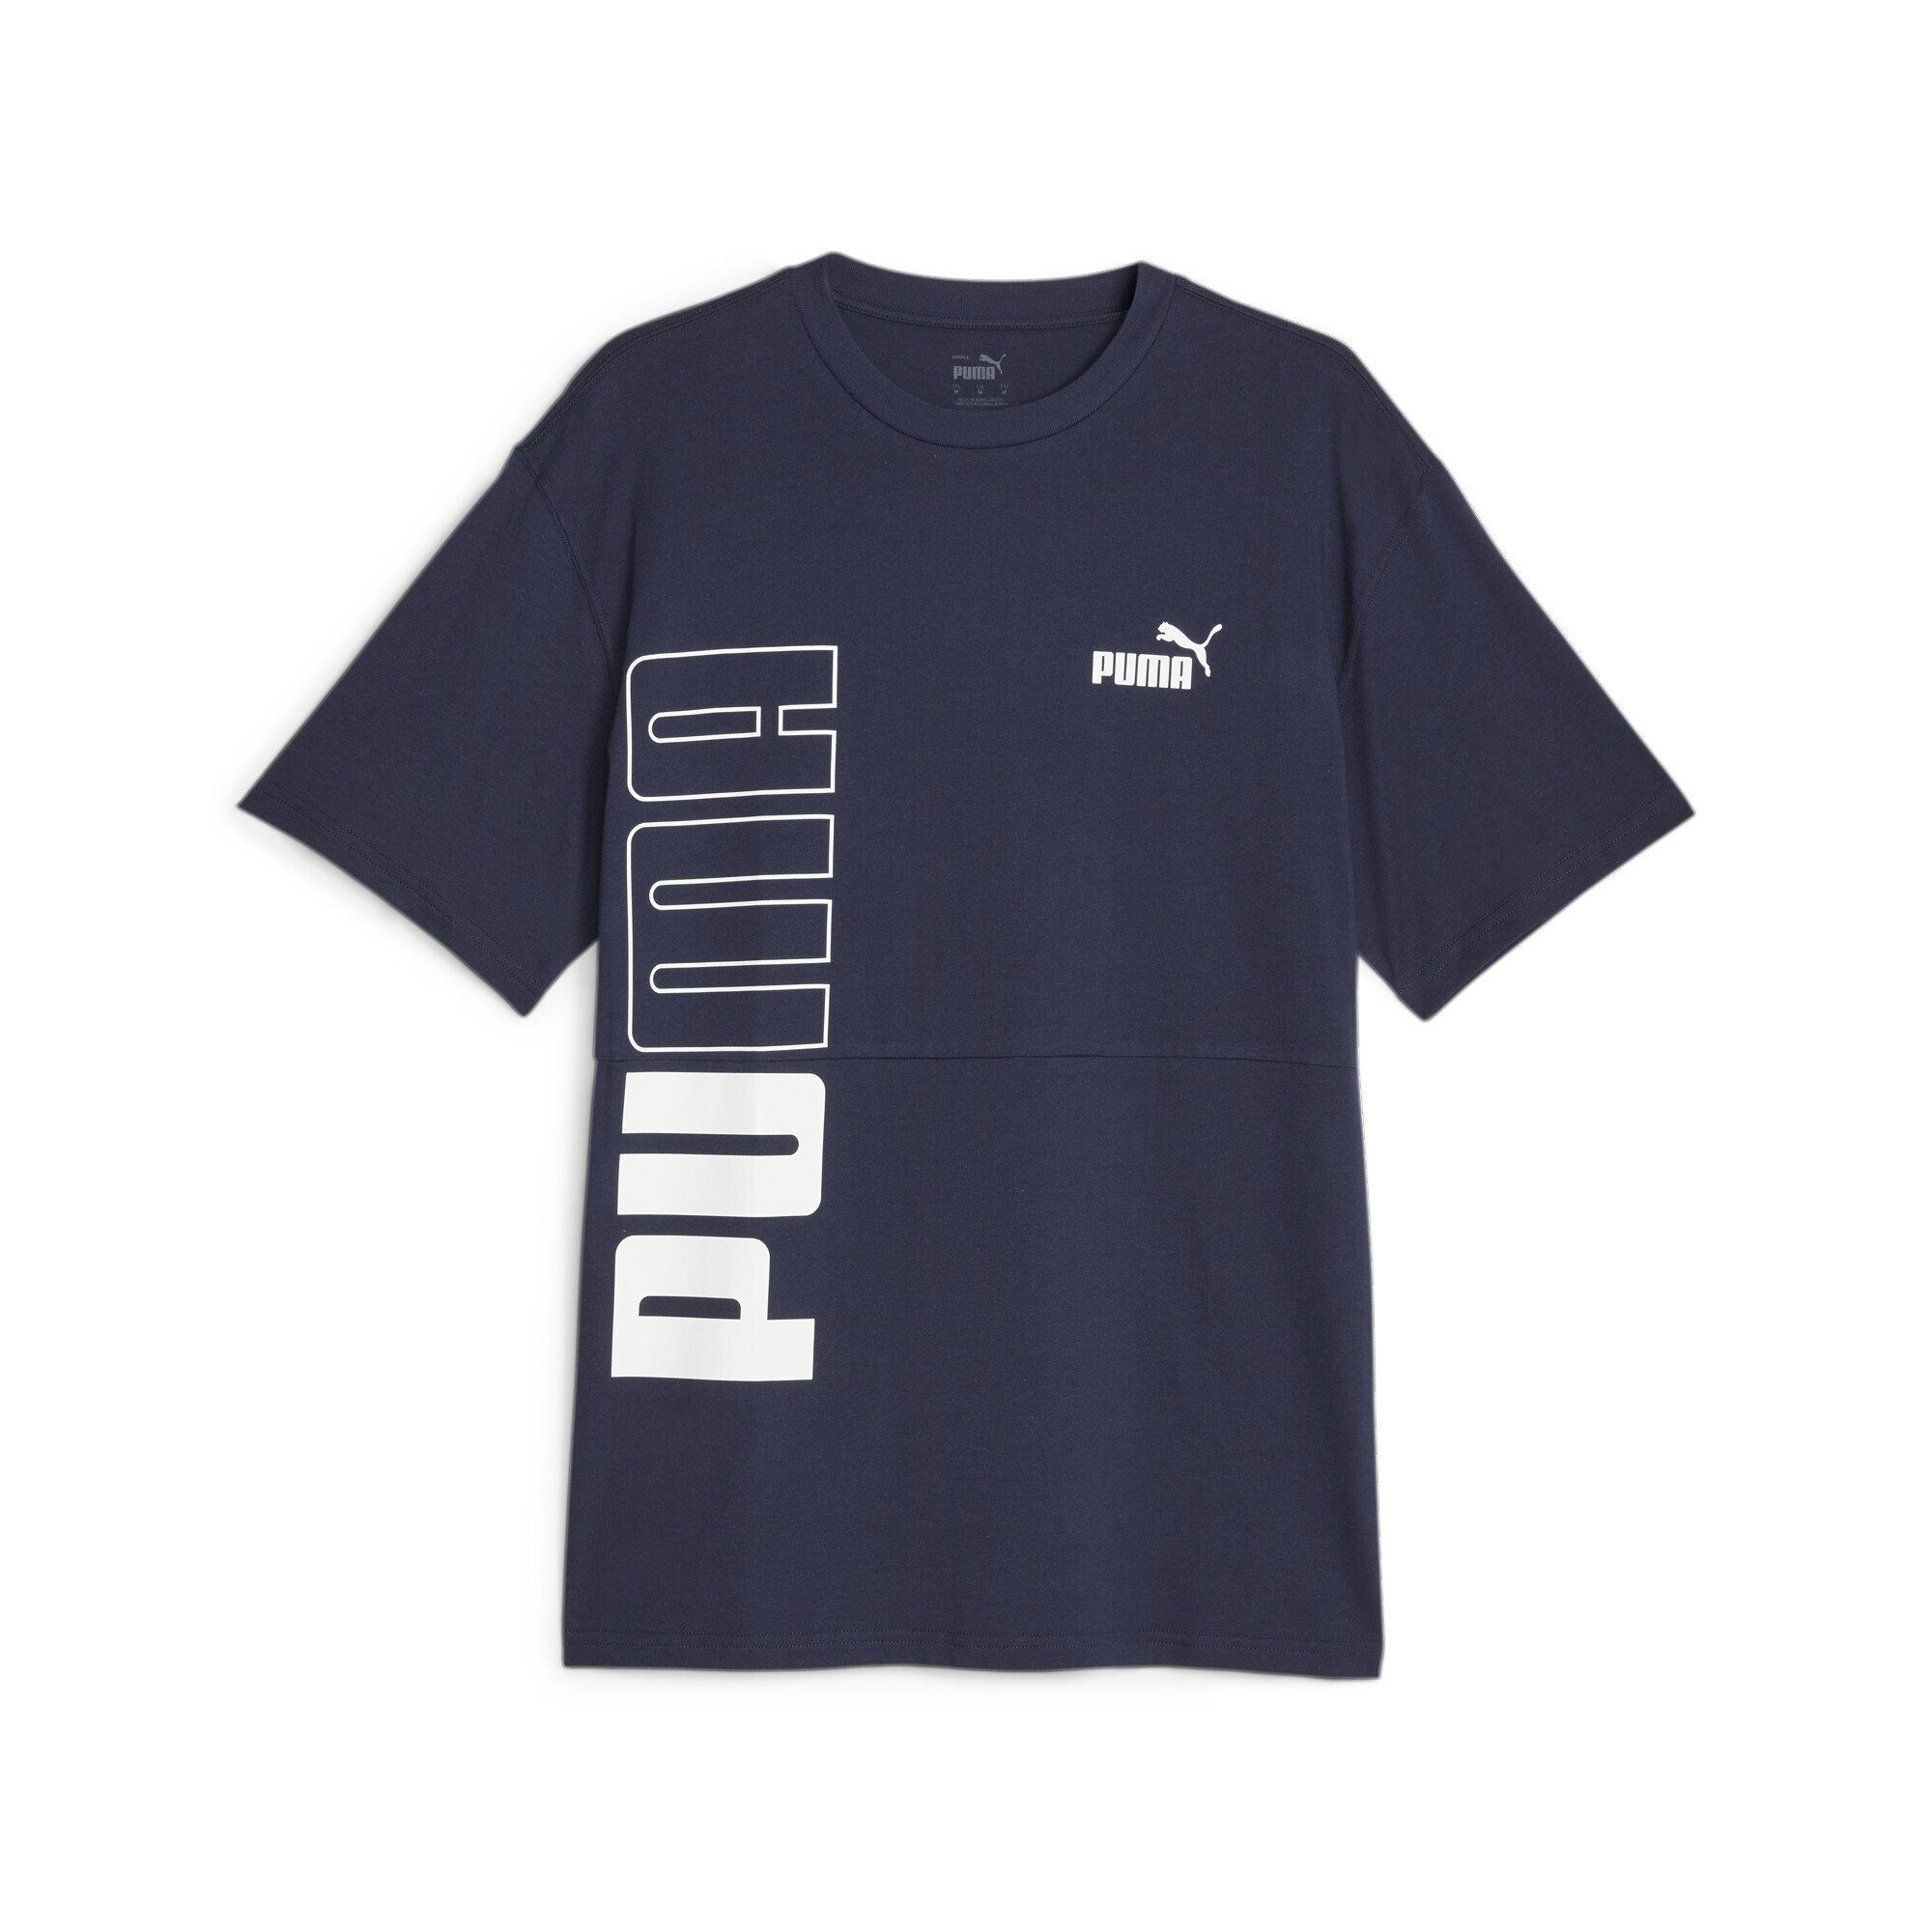 PUMA T-Shirt Herren Navy Blue POWER T-Shirt PUMA